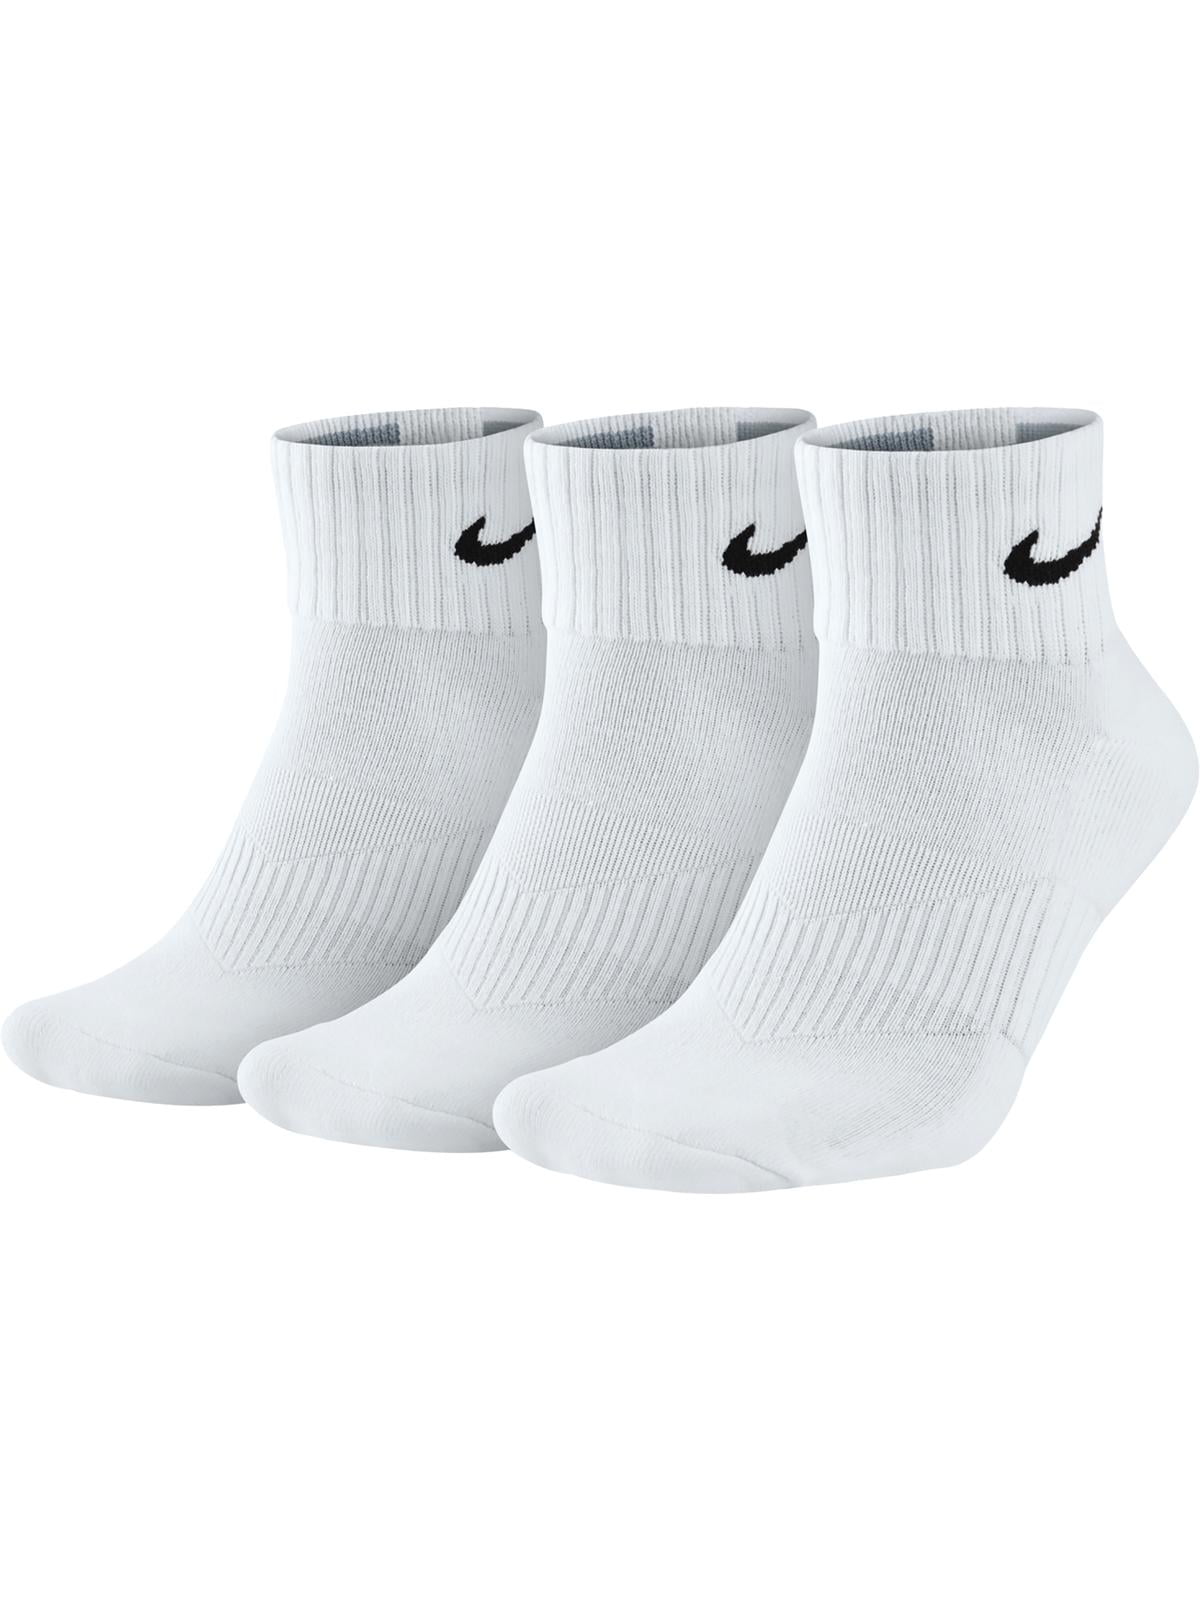 Analítico Nevada Porque Nike Mens 3PK Cushioned Quarter Socks White 12-15 - Walmart.com